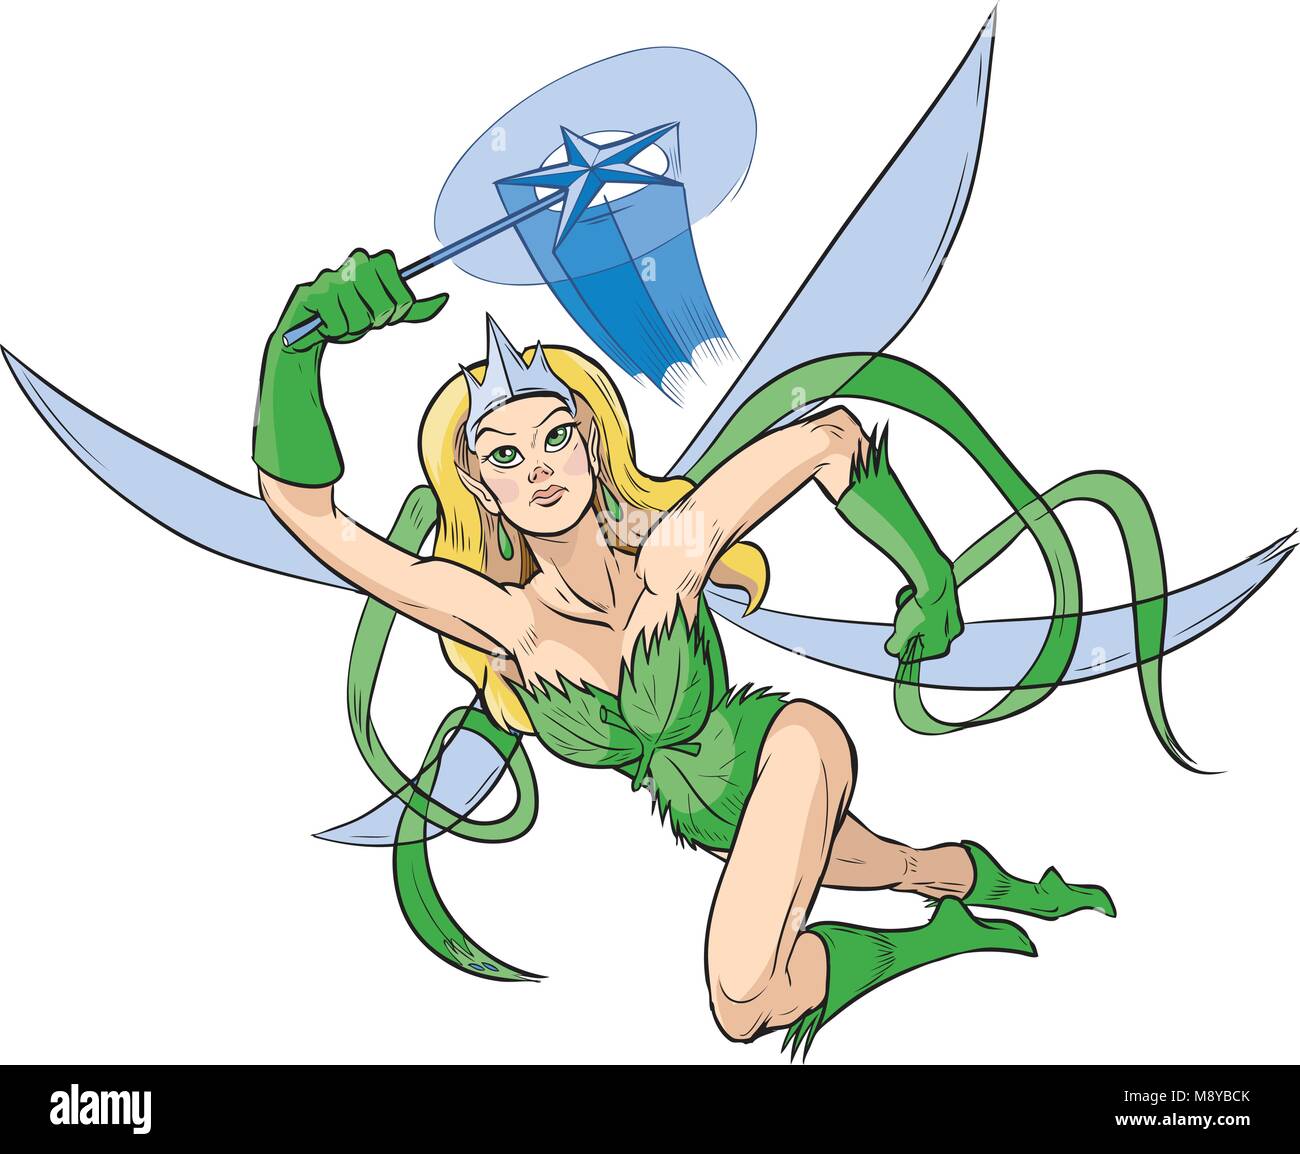 Vektor cartoon Clipart Illustration eines weiblichen Superhelden mit einem Waldgebiet Fee Prinzessin Thema mit einer Krone, Stern Zauberstab, und Flügeln. Gezeichnet ich Stock Vektor